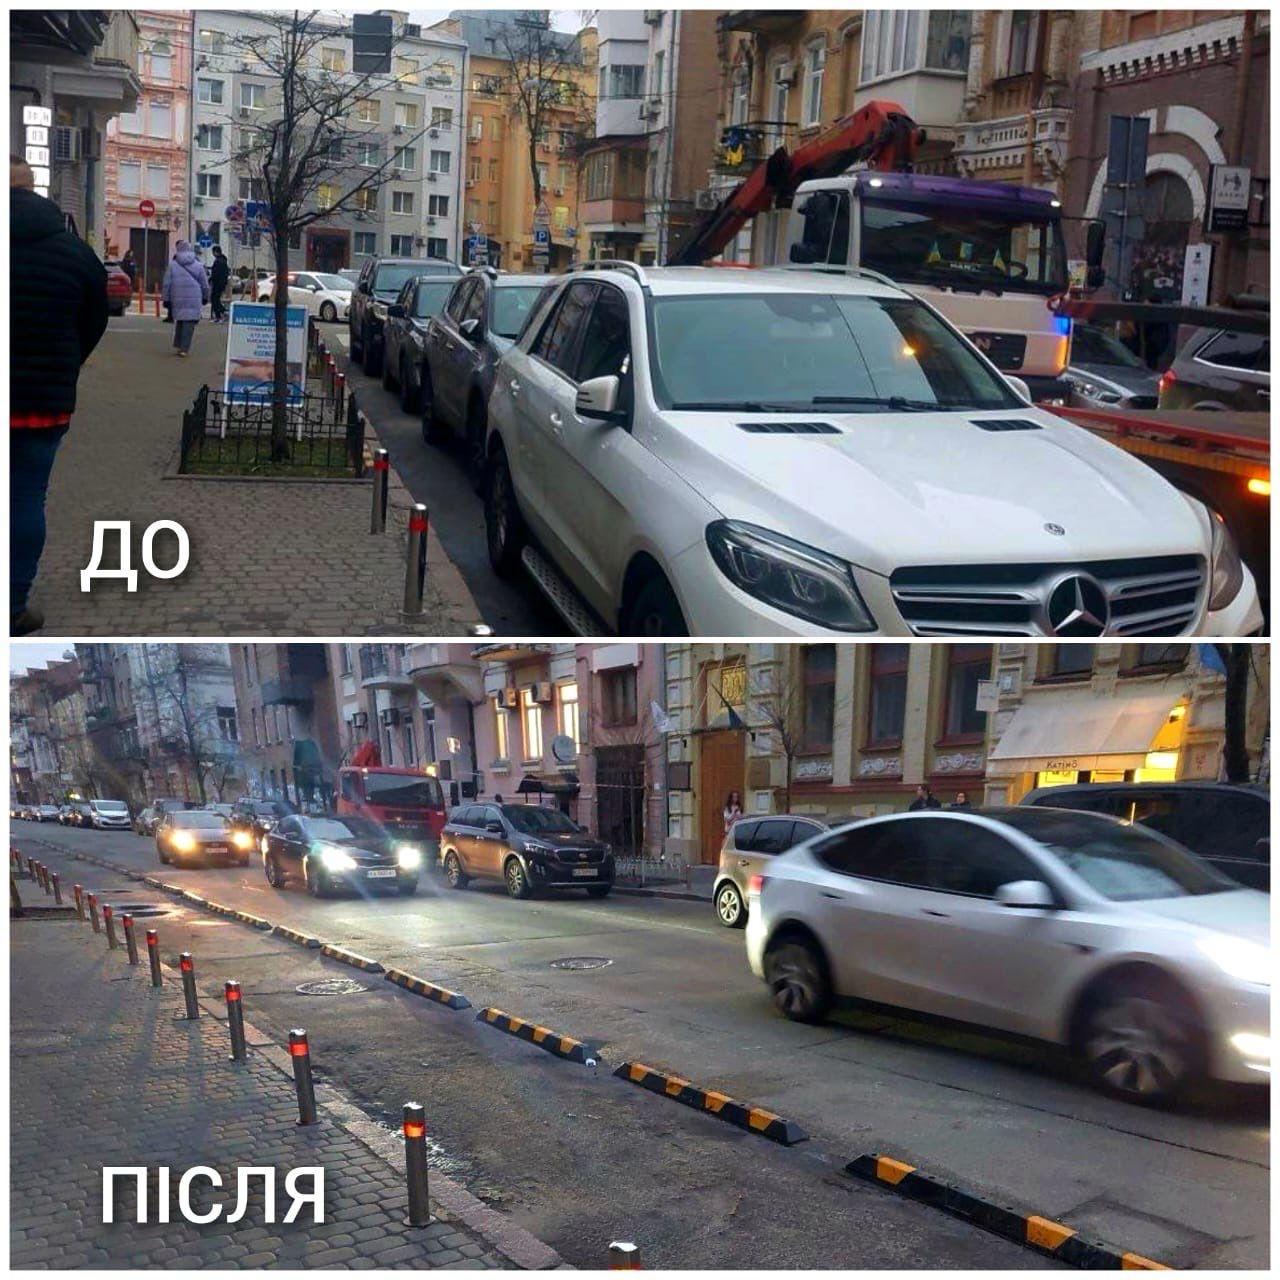 В Киеве проверяют парковку: за что могут эвакуировать авто